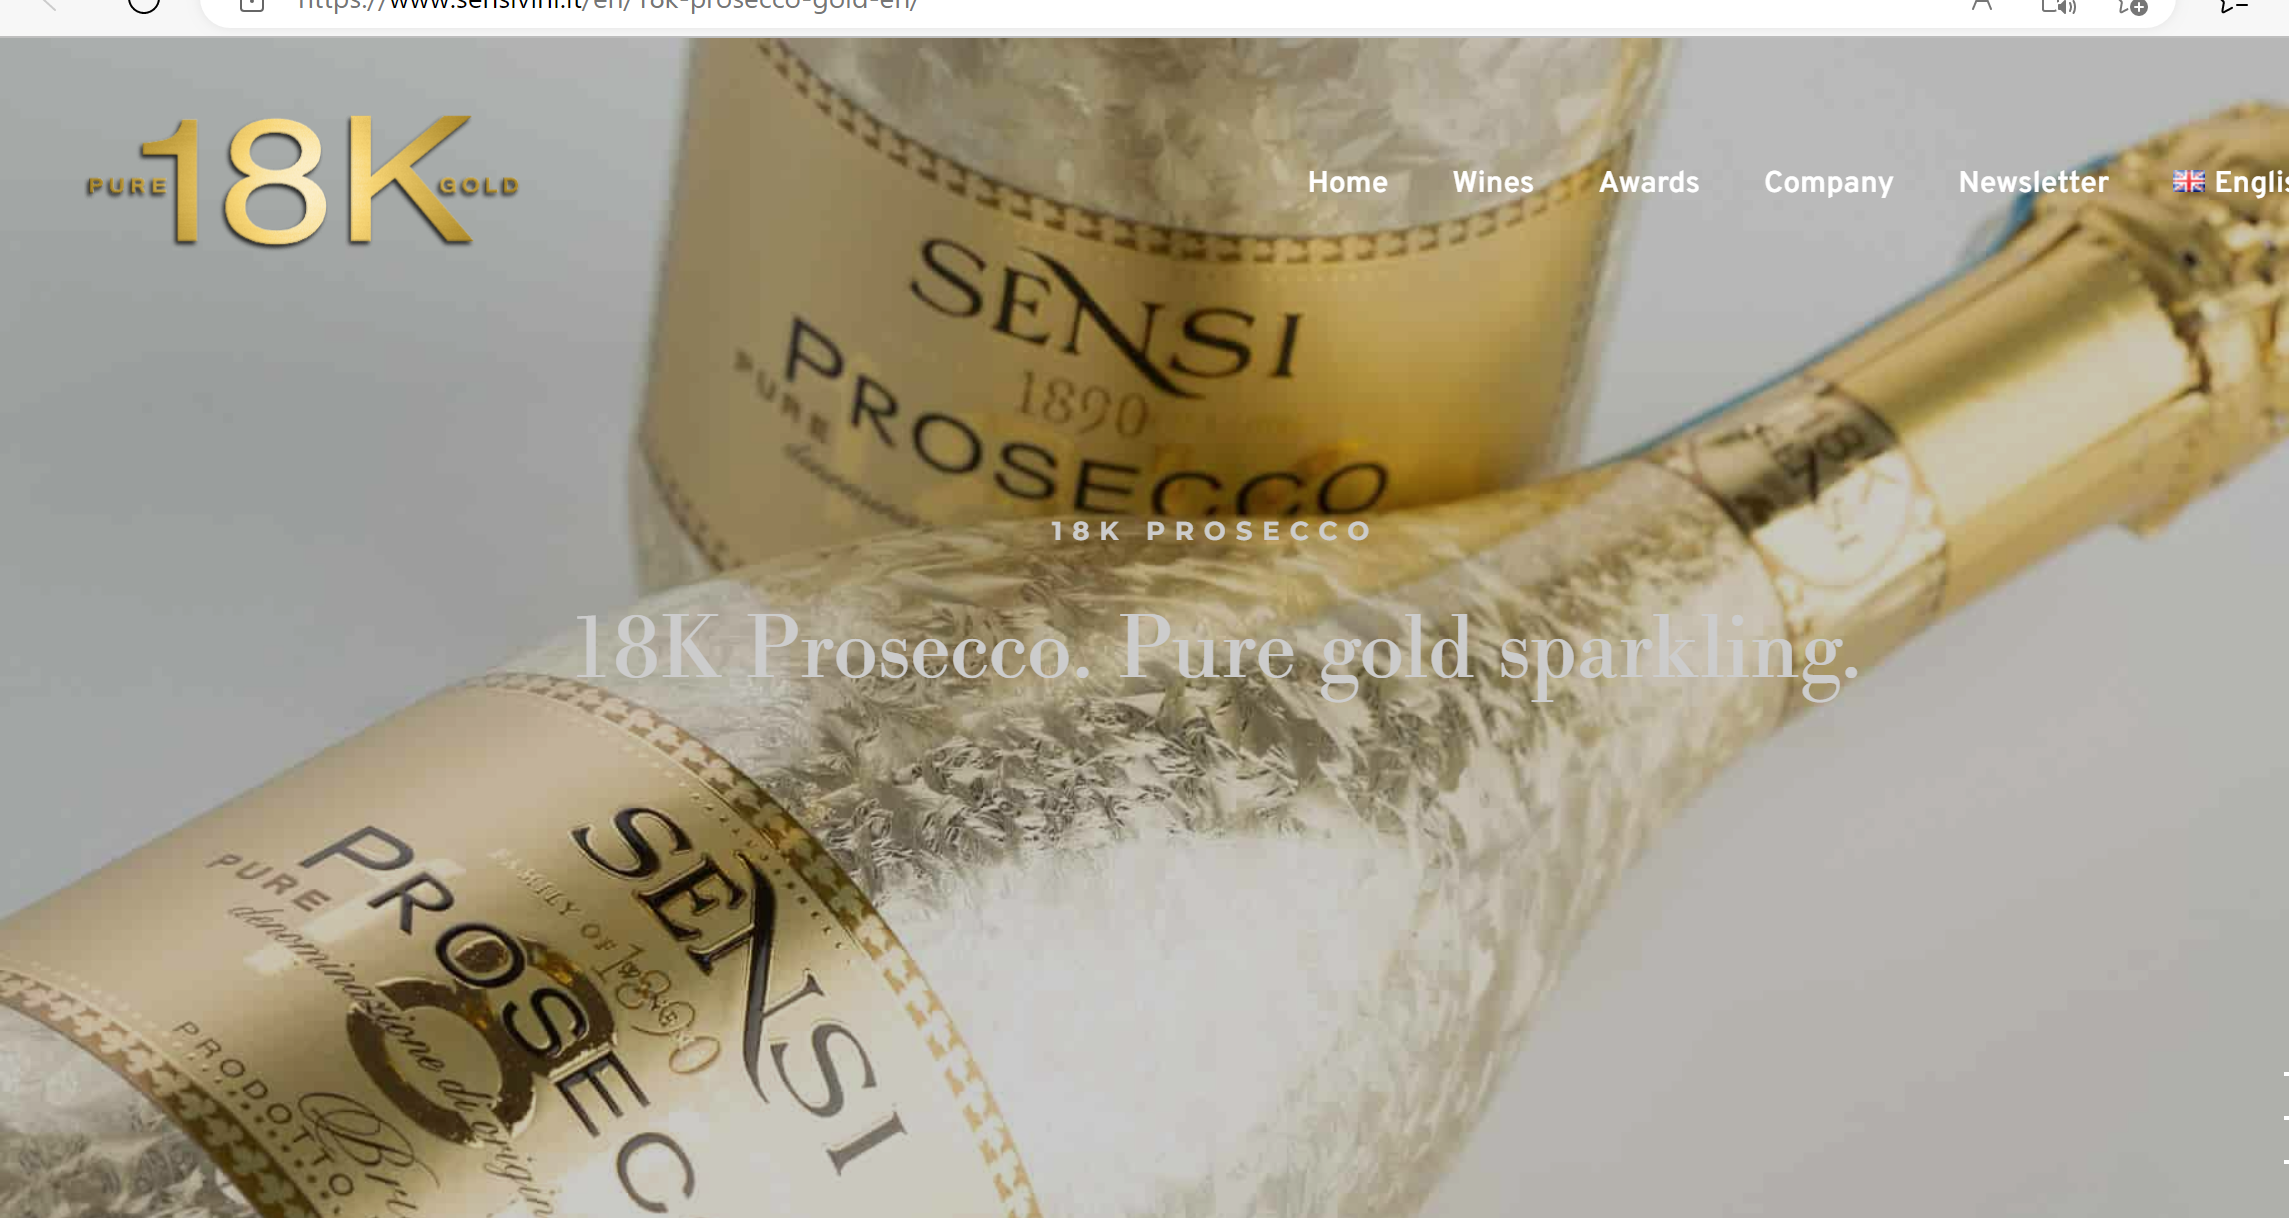 1 bottle of Sensi Prosecco